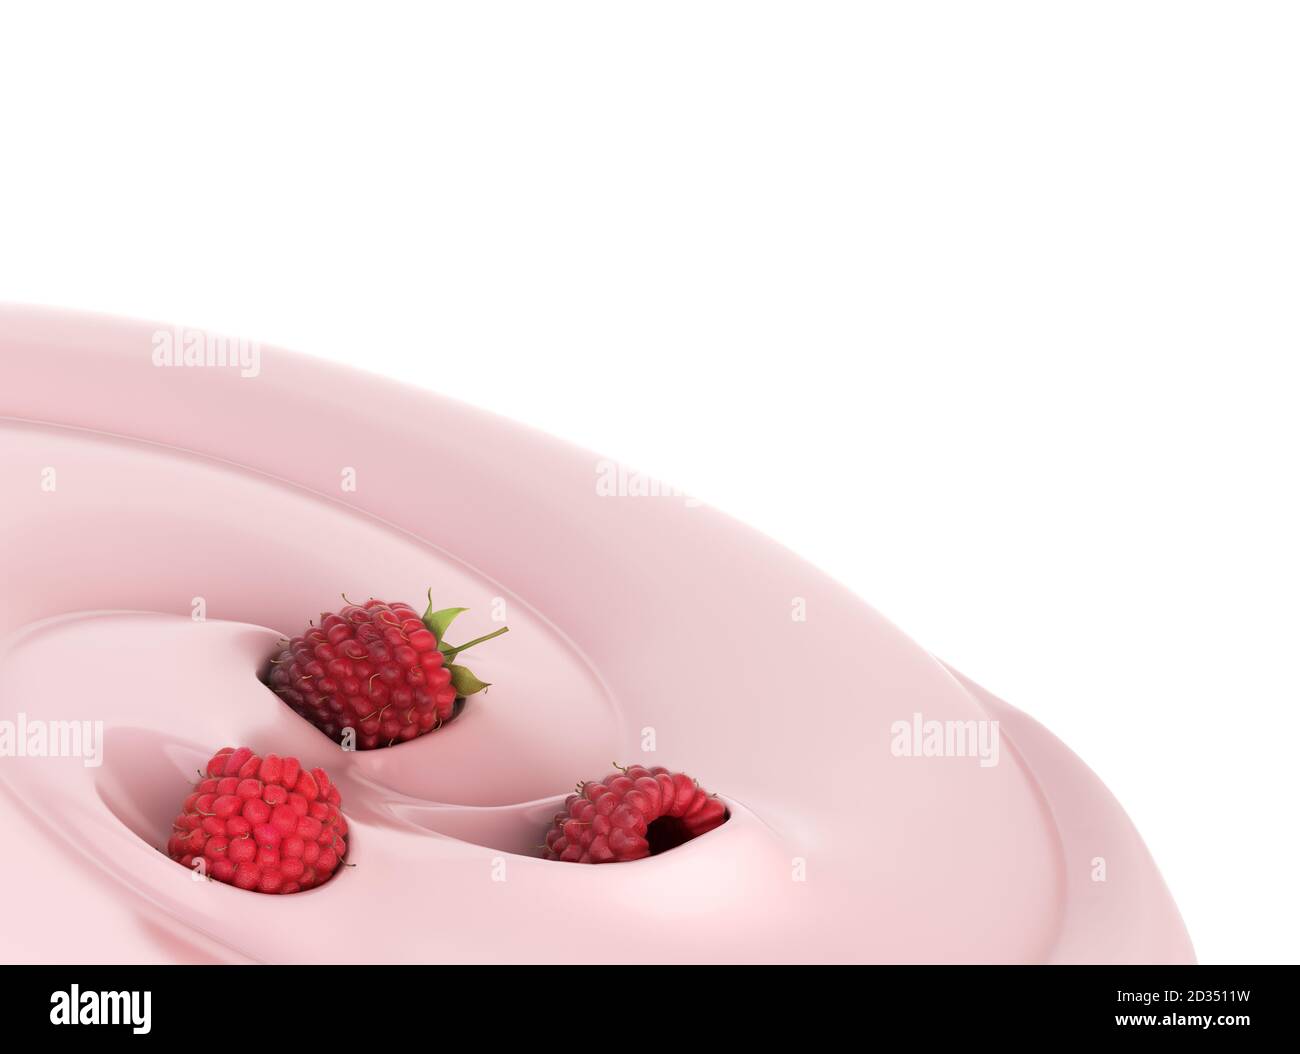 Himbeeren schweben in einem Joghurt Präsentation von Milchprodukten gewürzt 3d-Renderbild Stockfoto